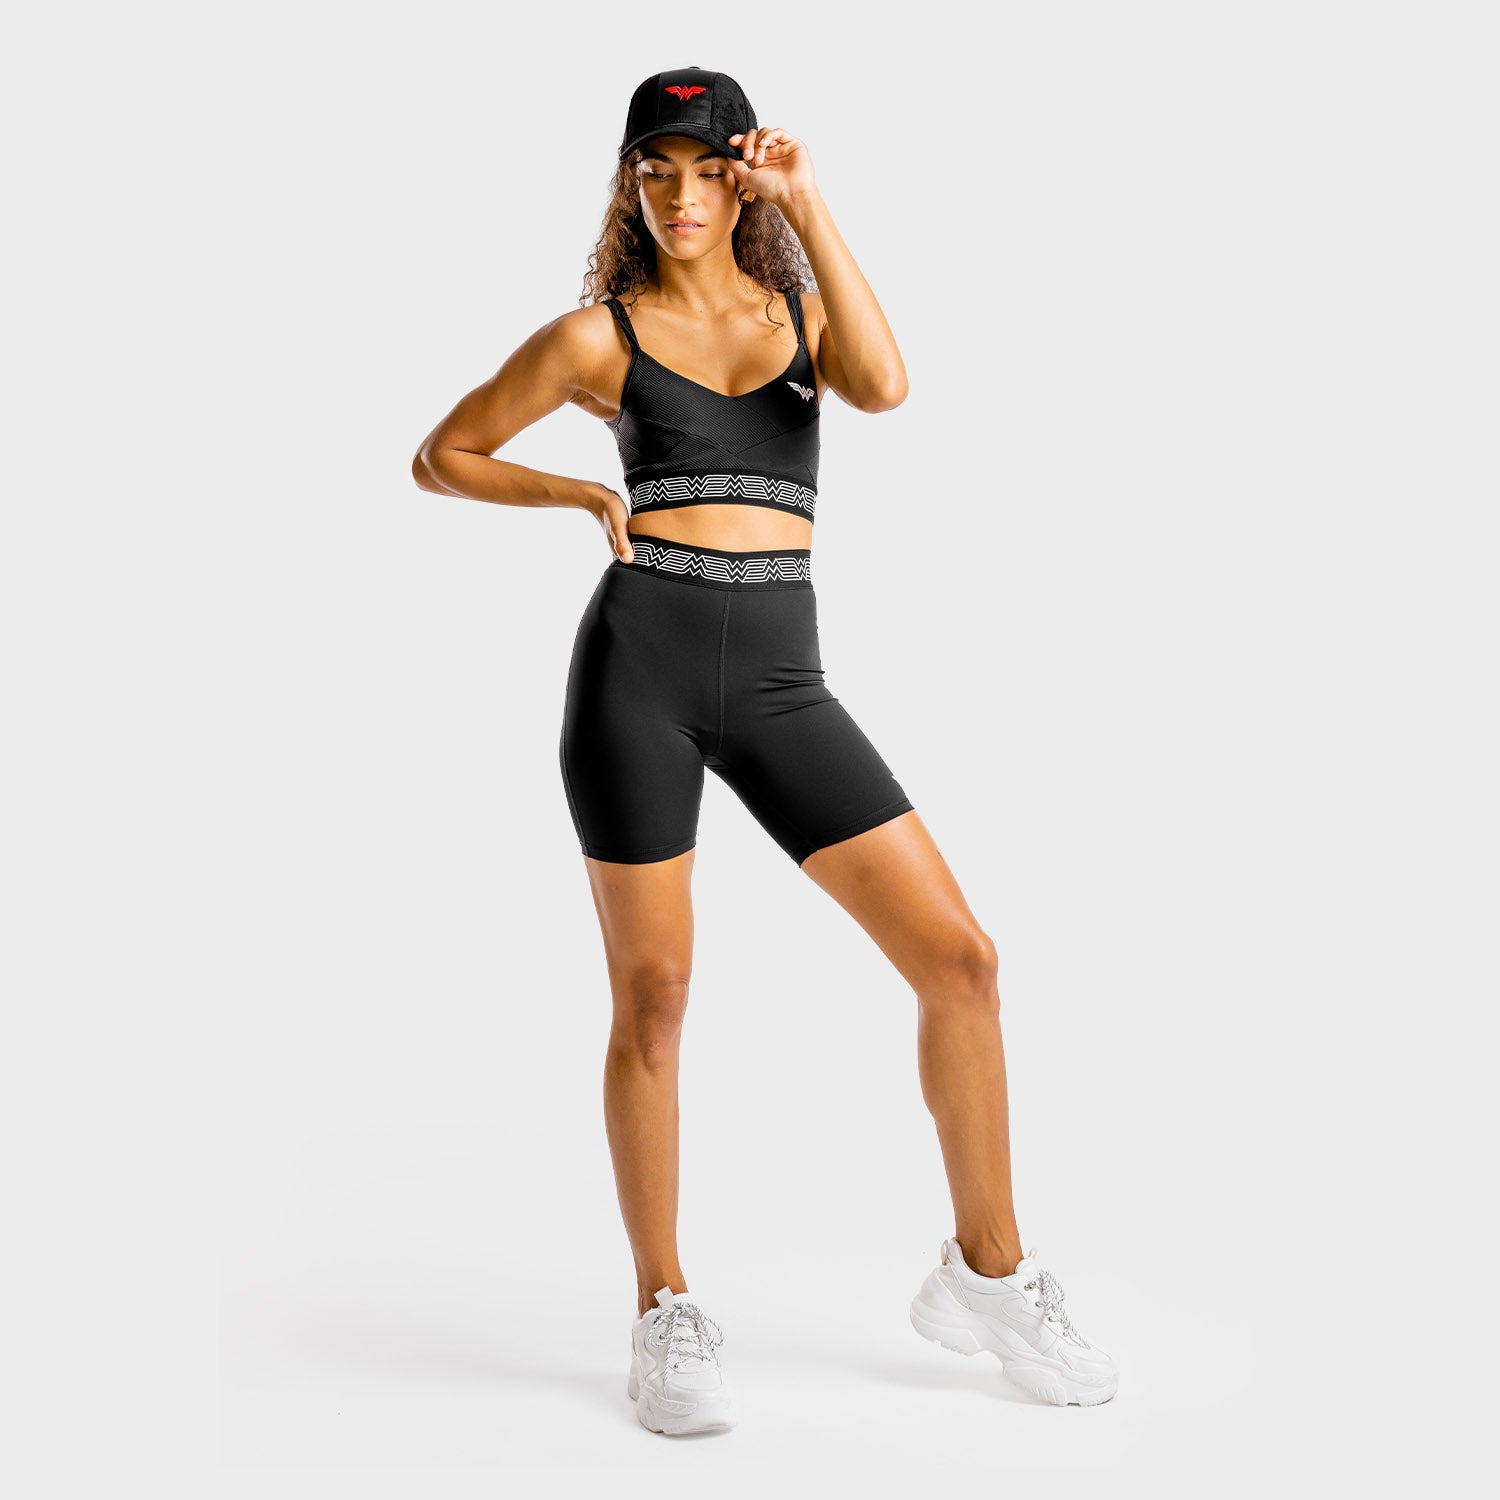 squatwolf-gym-caps-for-women-wonder-woman-cap-black-workout-clothes